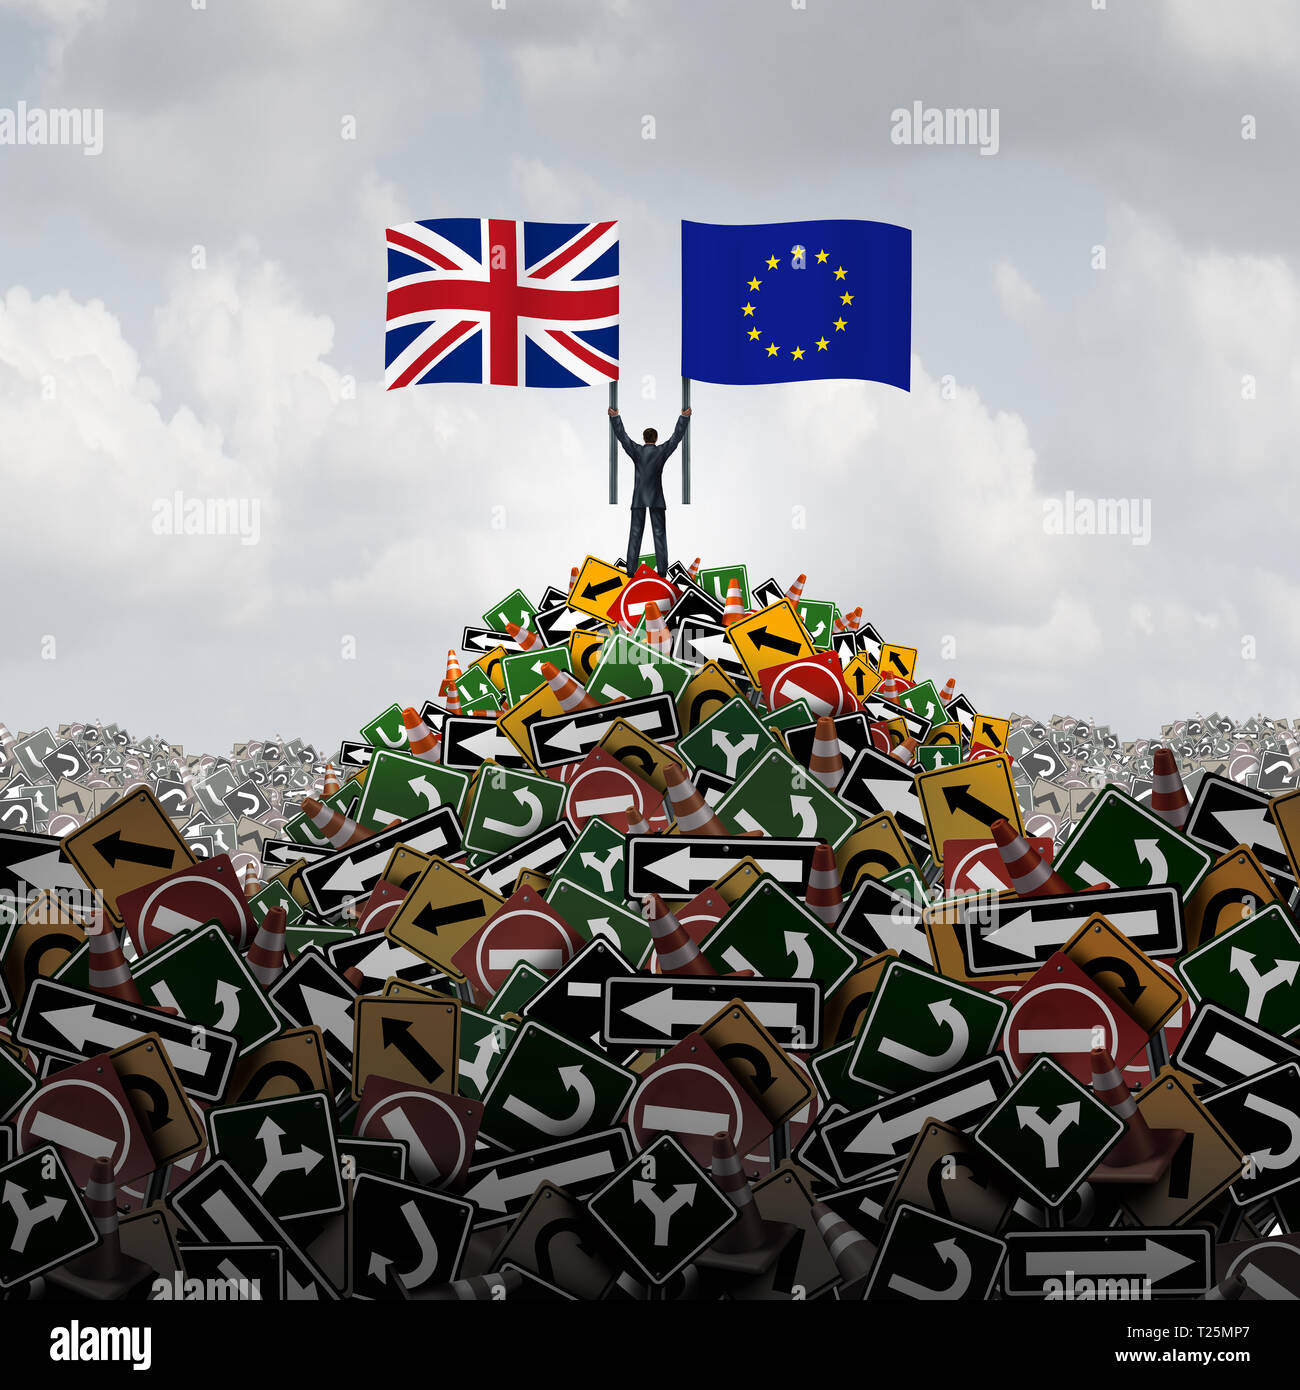 Décision de l'Union européenne Royaume-uni ou la Grande-Bretagne Europe confusion politique qu'un brexit concept pour un nouveau vote de la Grande-Bretagne et de la crise gouvernementale. Banque D'Images